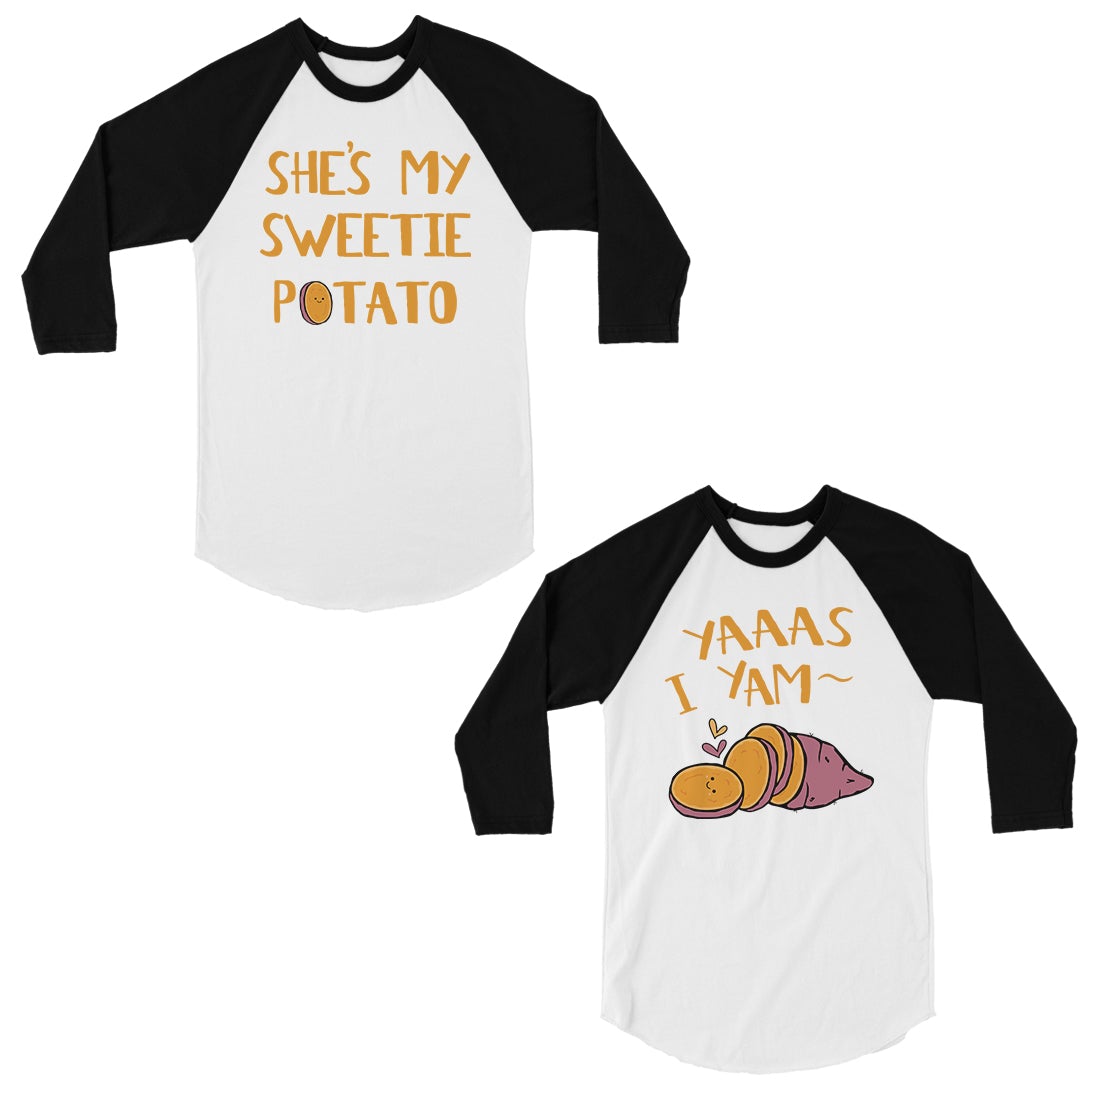 Sweet Potato Yam Funny Matching Baseball Shirts Cute Couples Gift Black and White